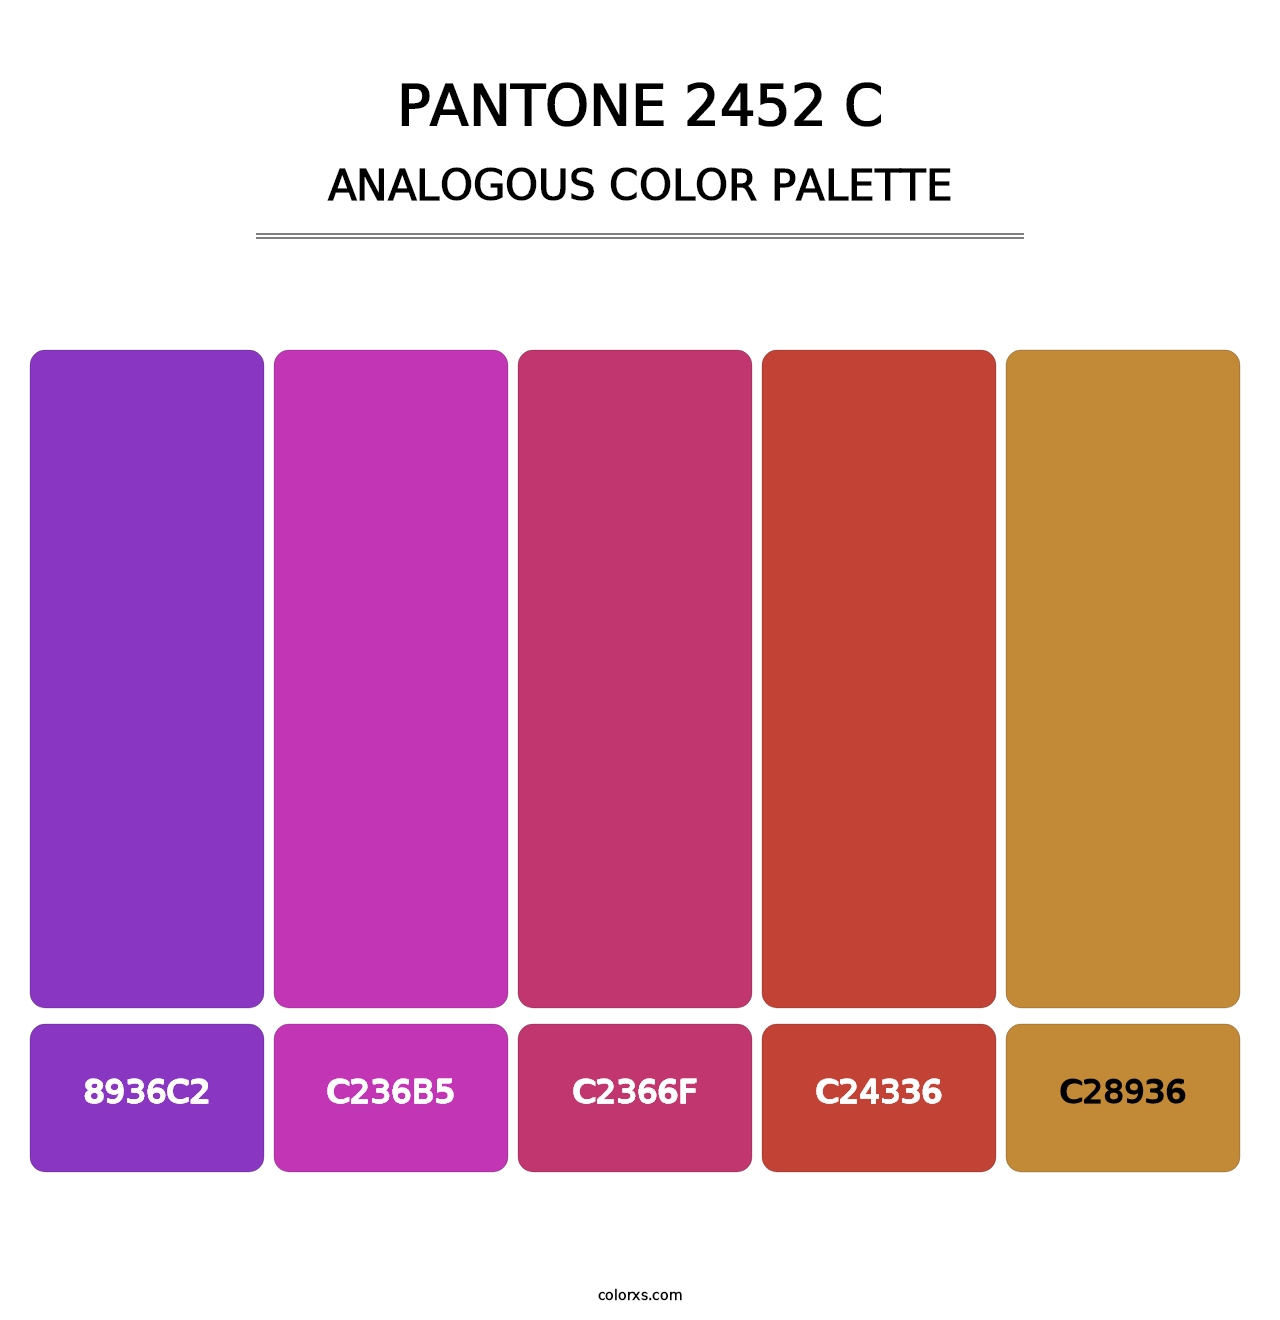 PANTONE 2452 C - Analogous Color Palette